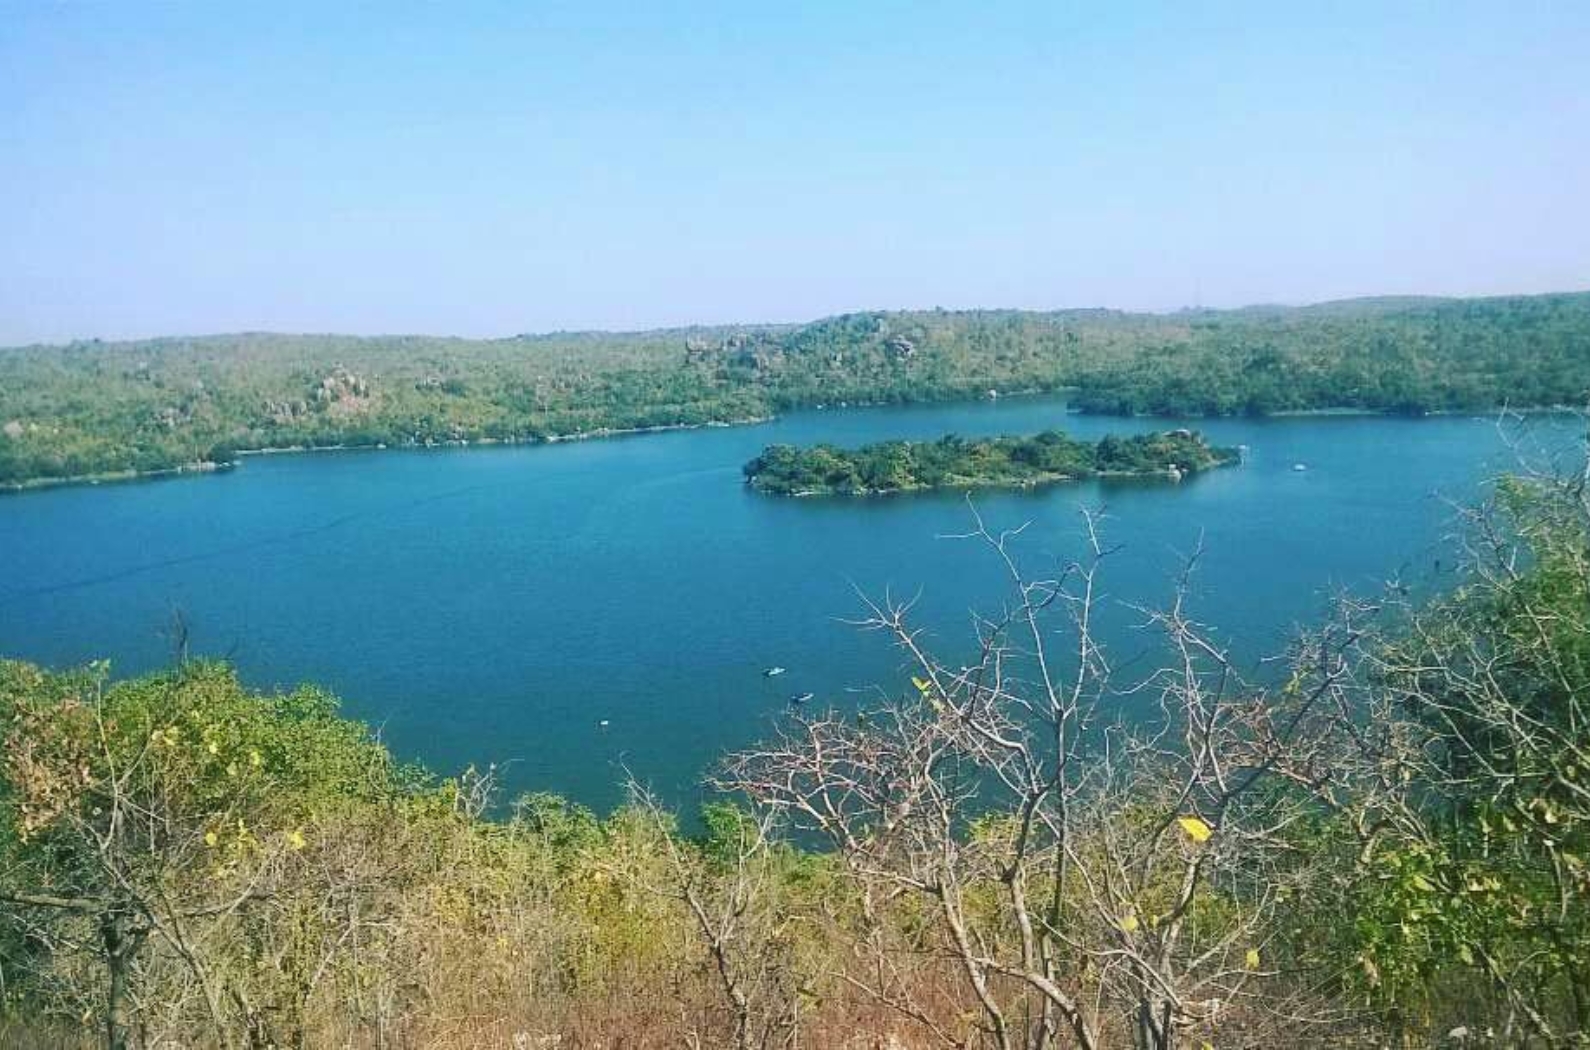 Ali Sagar Lake